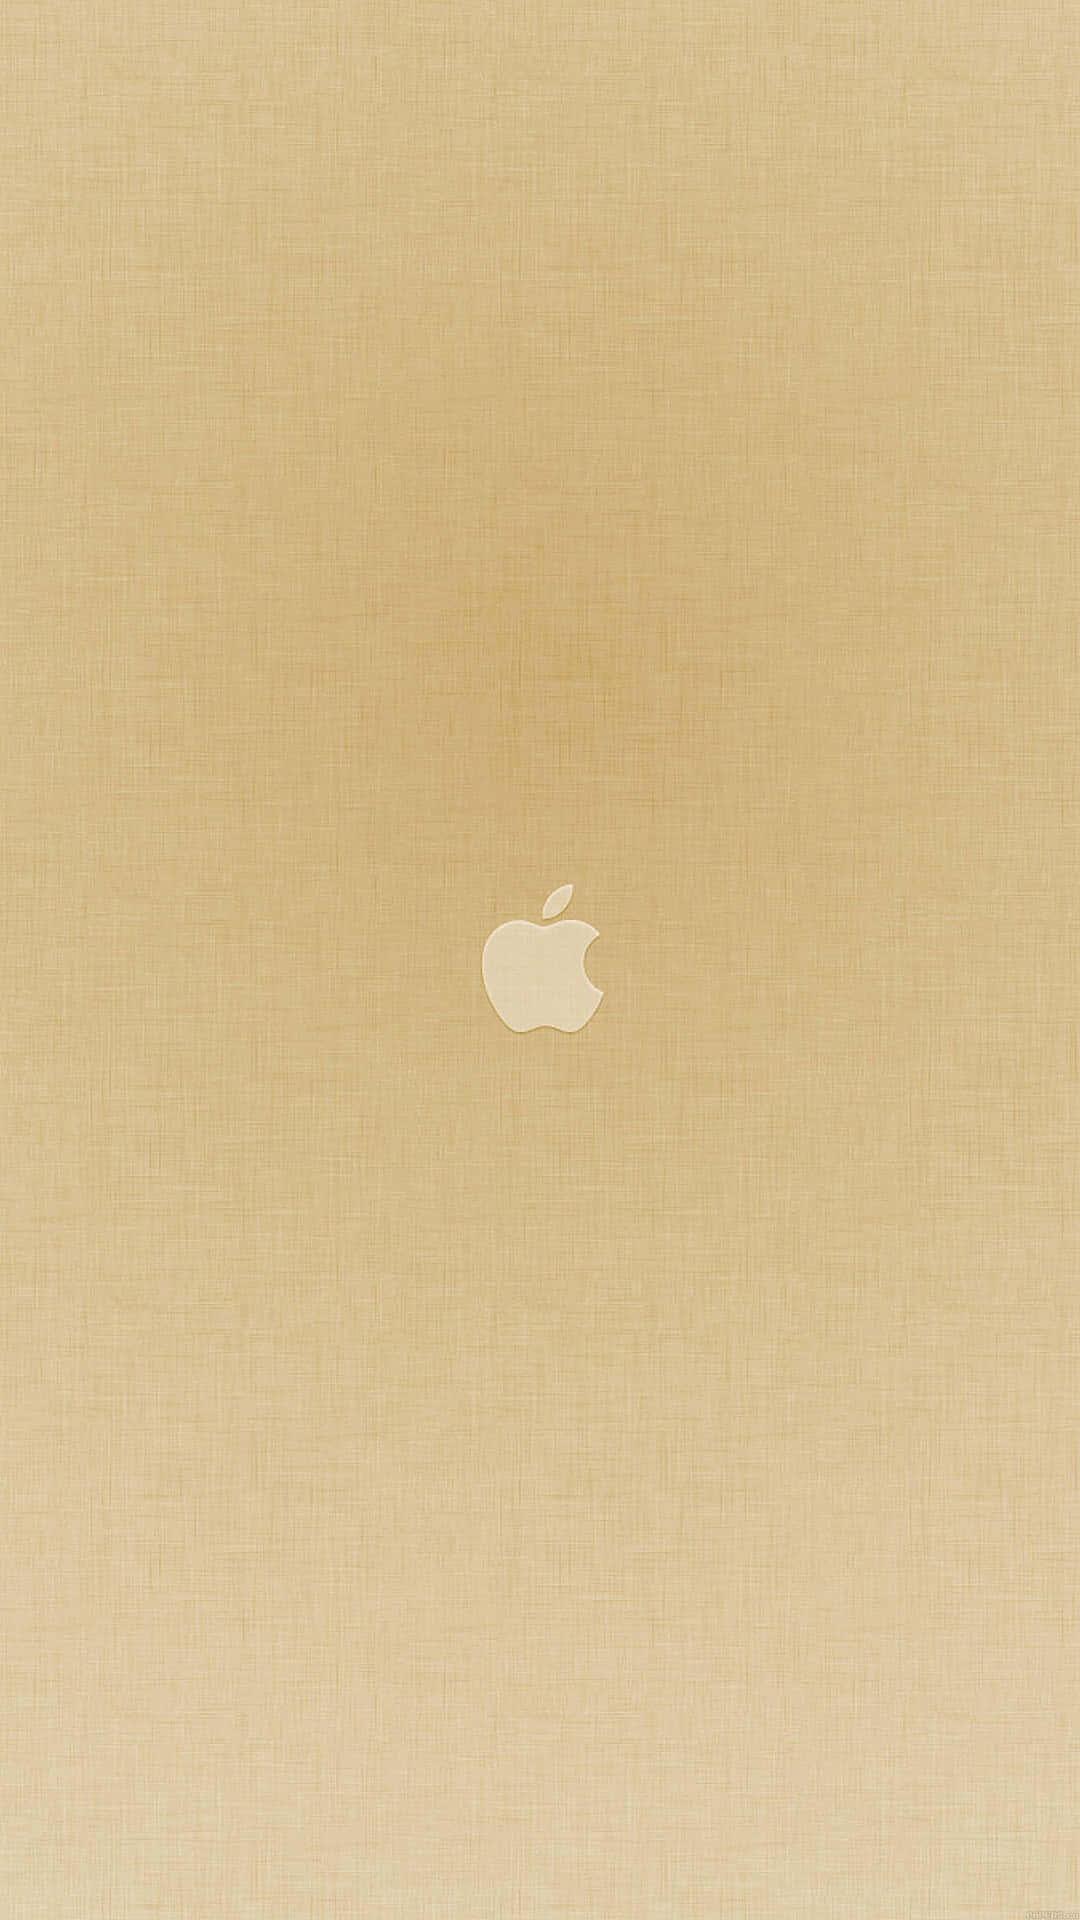 Glanzendesgoldenes Iphone Wallpaper